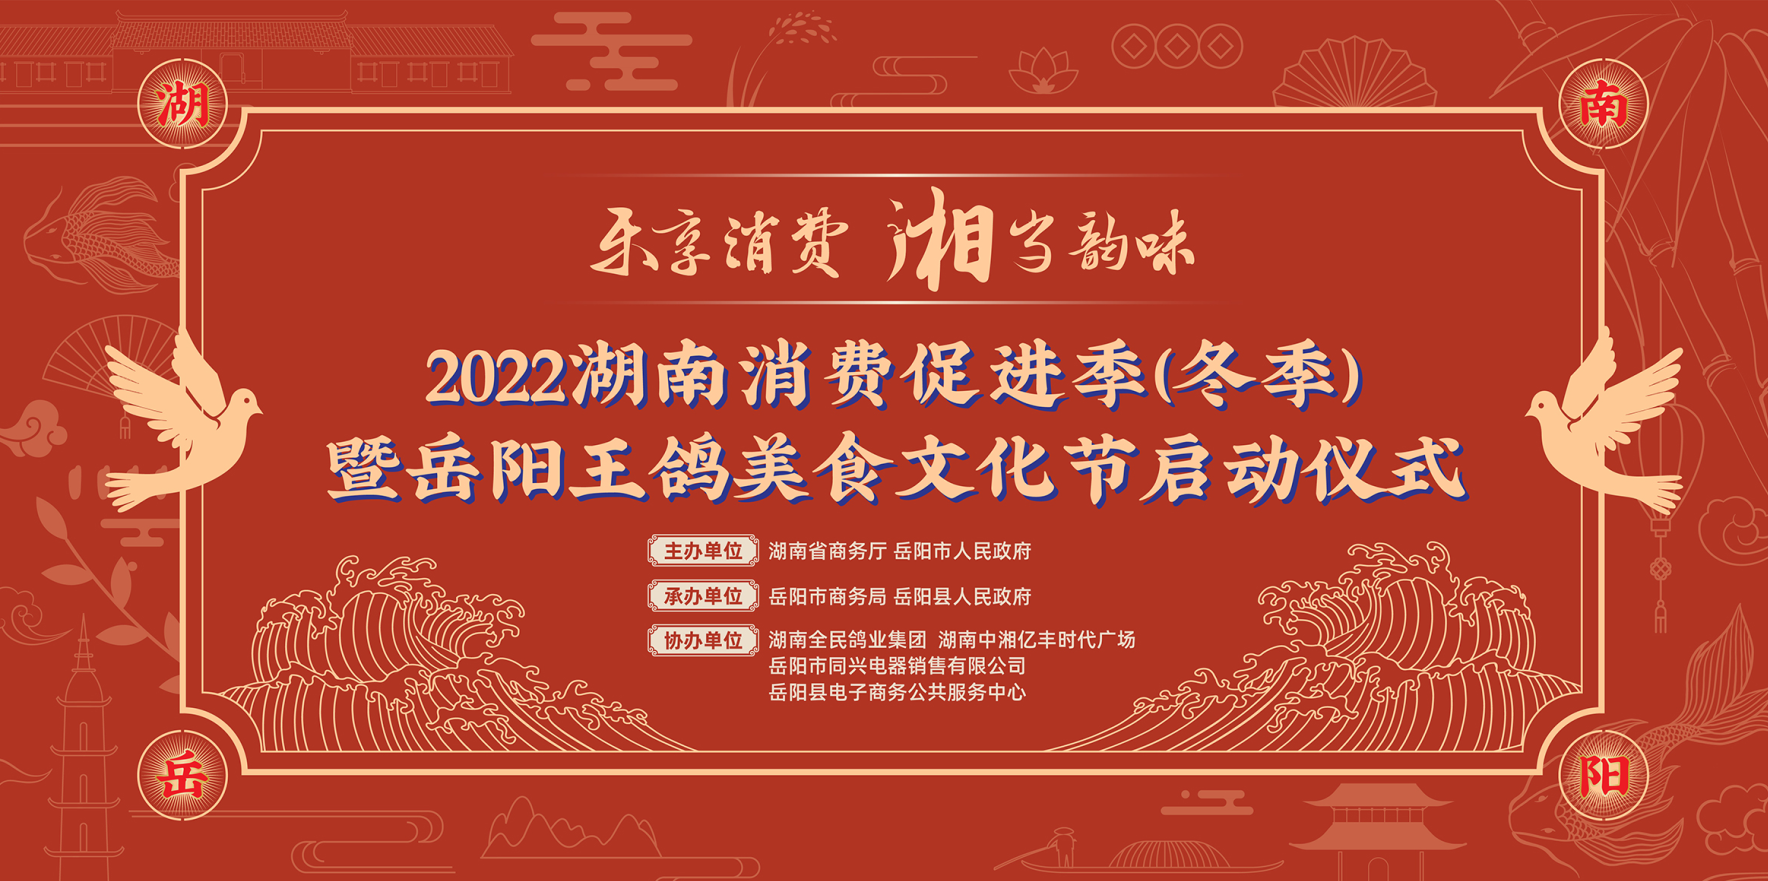 2022湖南消费促进季暨岳阳王鸽美食文化节启动仪式